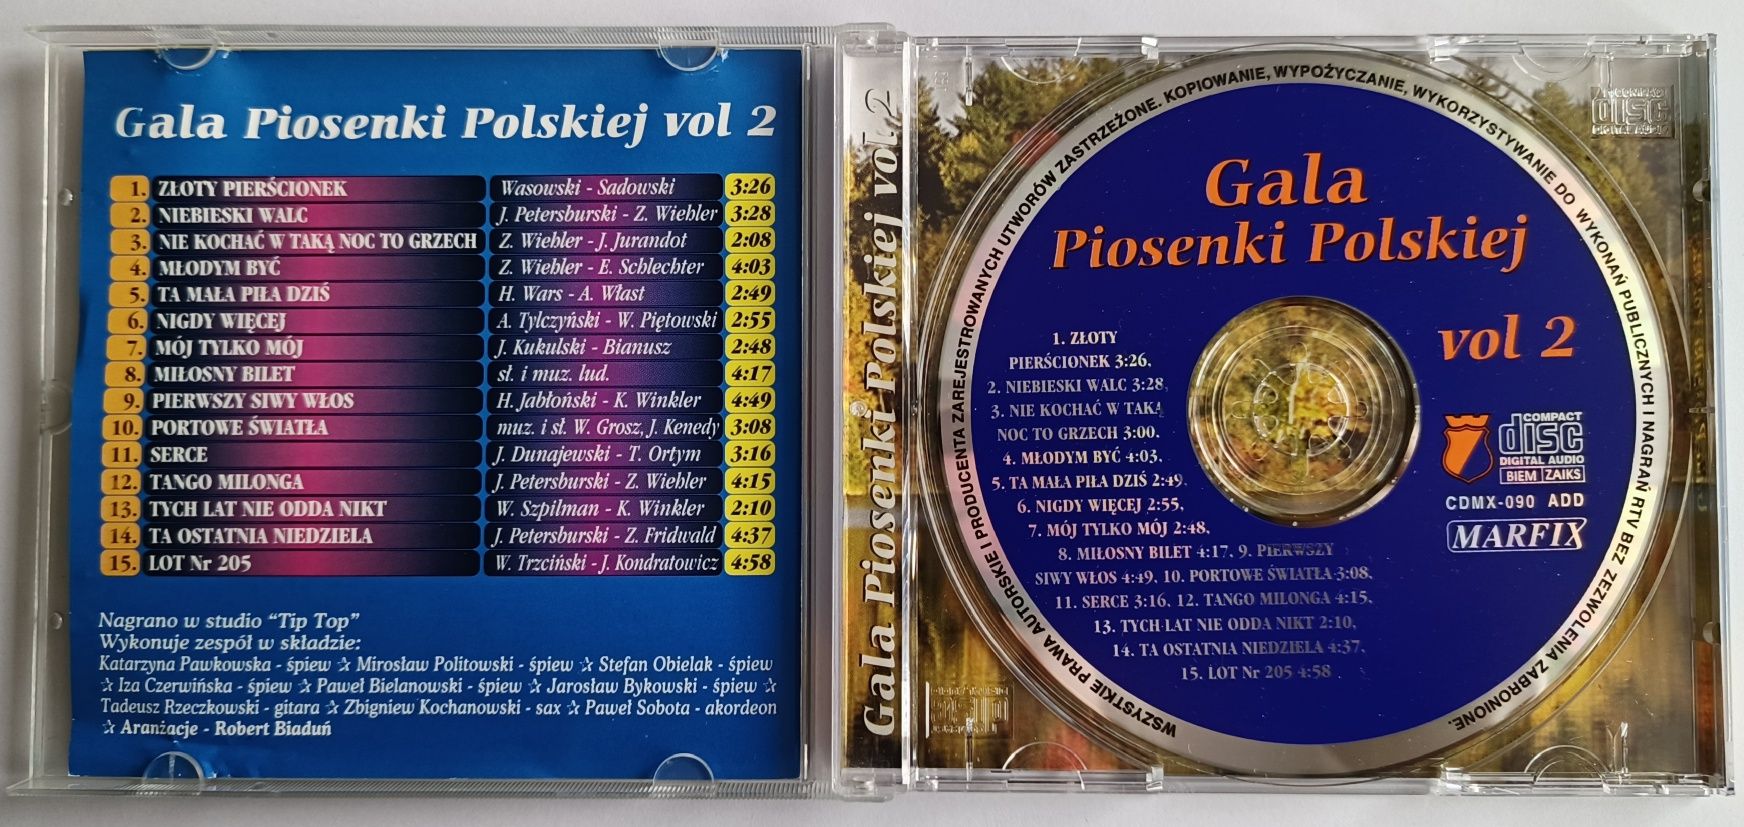 Gala Piosenki Polskiej vol. 2